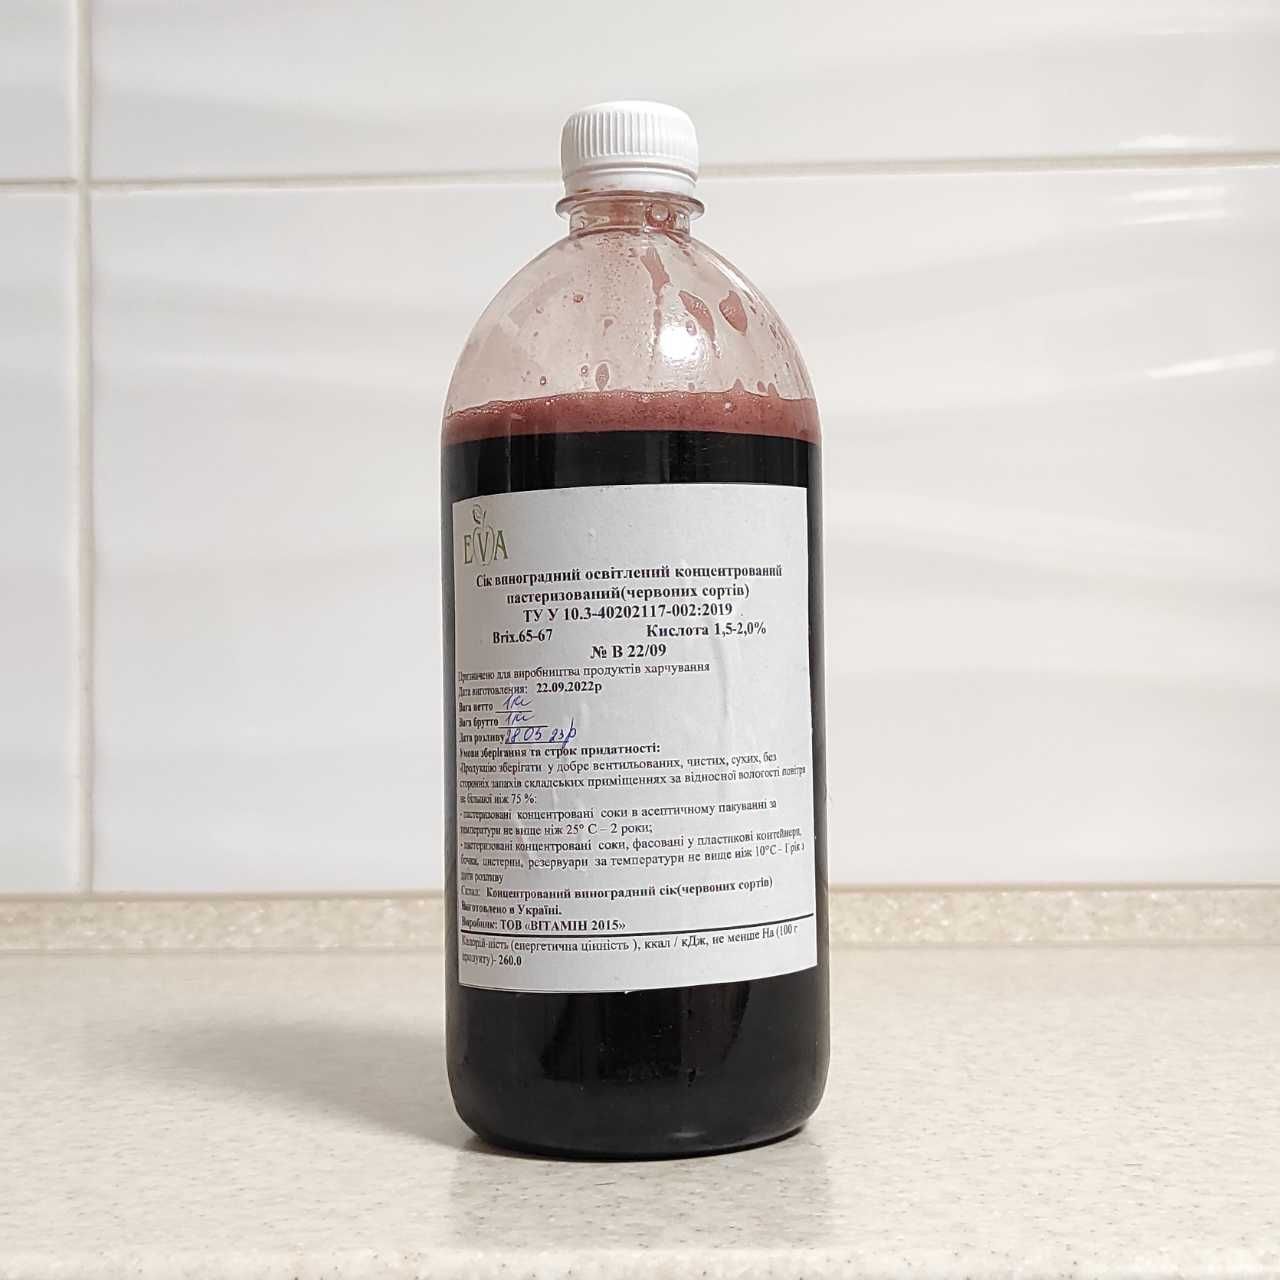 Конц. виноградный сок (красных сортов) (65-67 ВХ) бутылка 1 кг/0,76 л